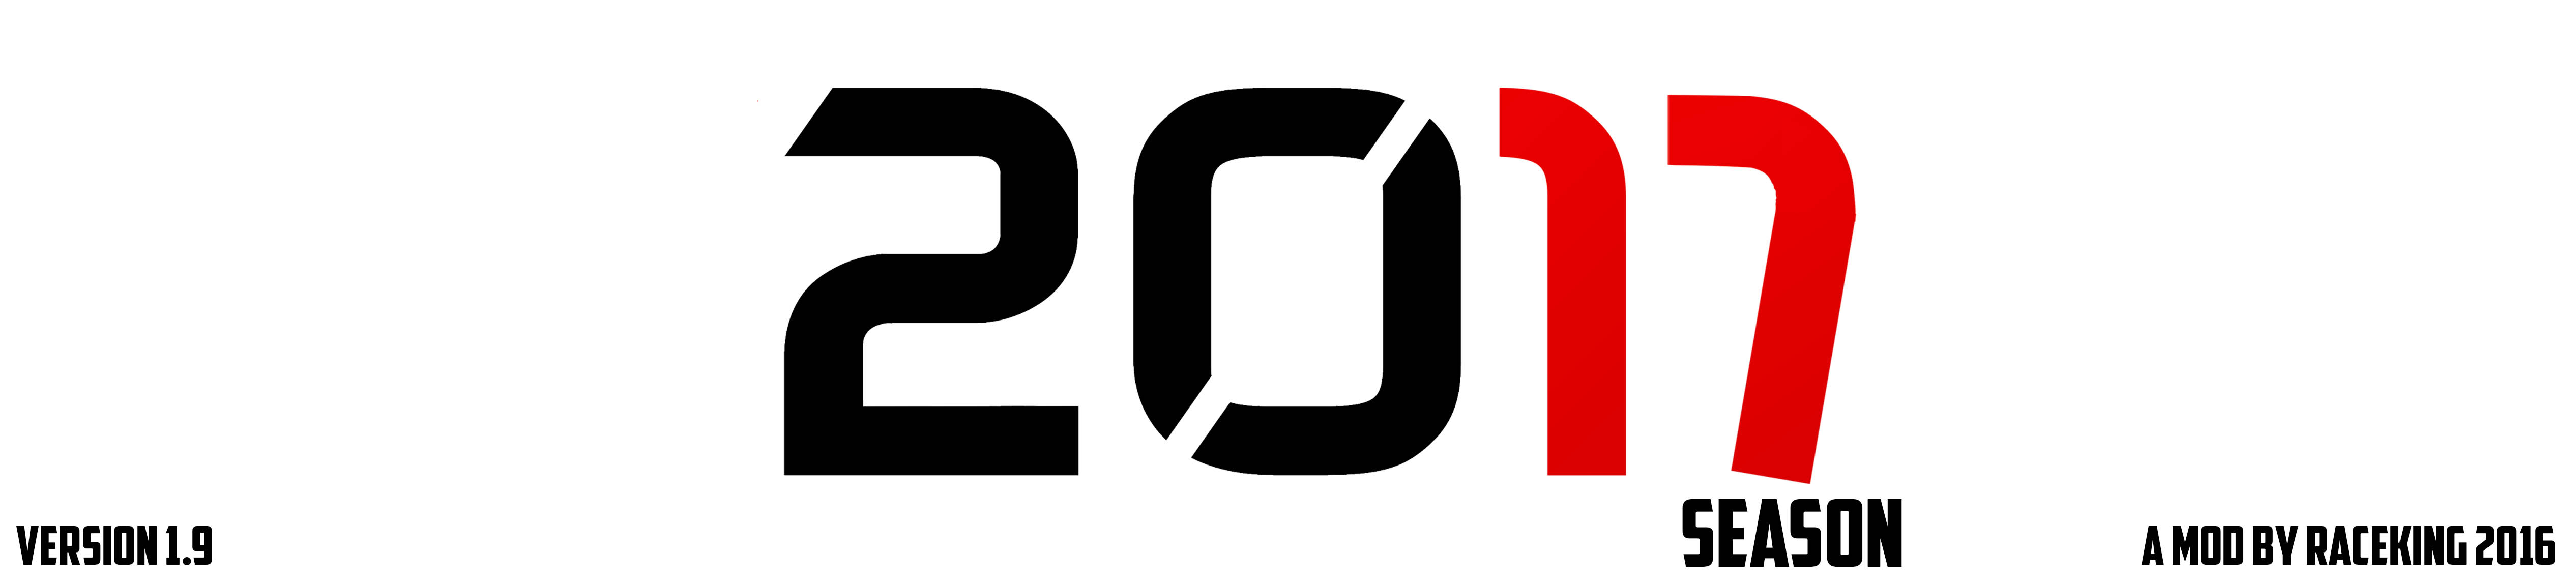 2017 Season Logo.jpg